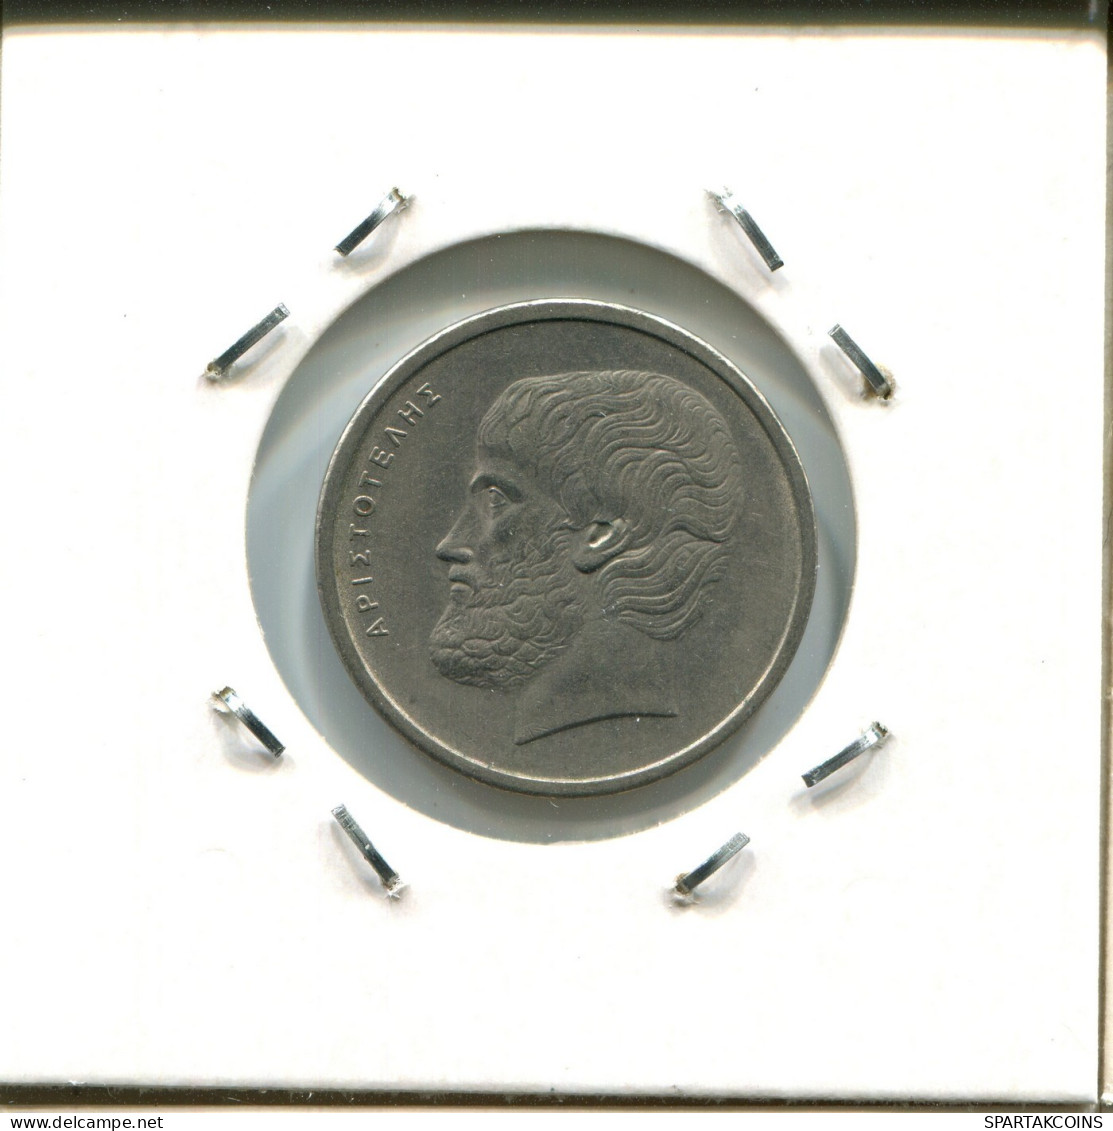 5 DRACHMES 1978 GRECIA GREECE Moneda #AW694.E.A - Griechenland